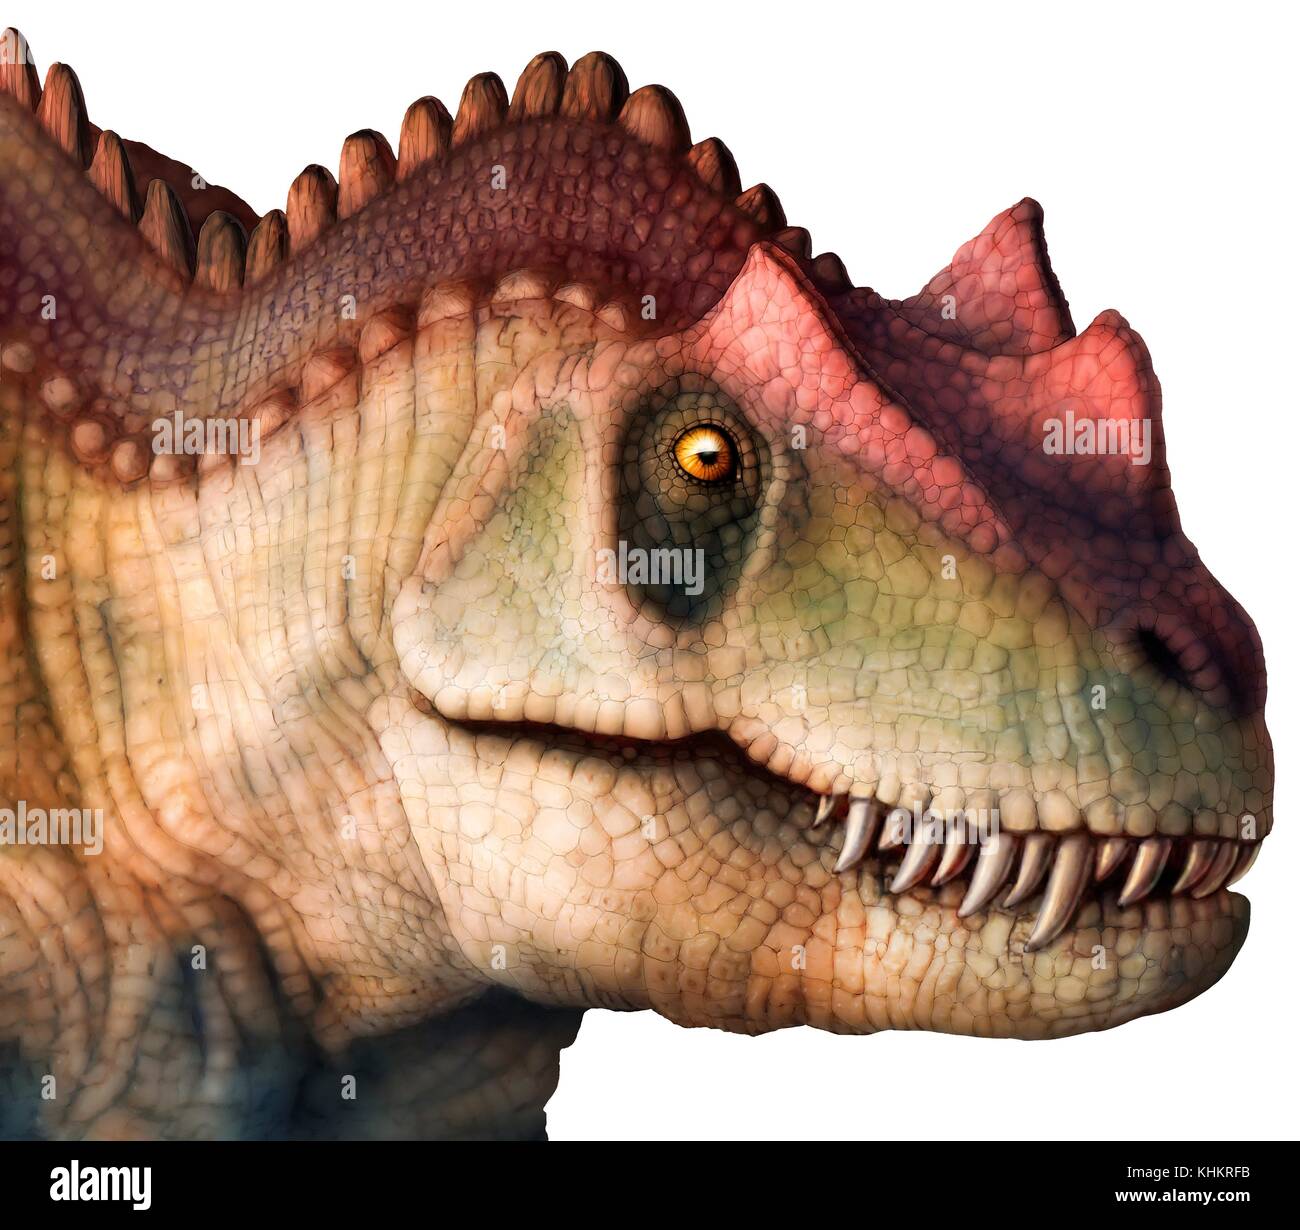 Illustration de la tête d'un Ceratosaurus sp. dinosaure. Ce grand dinosaure théropode carnivore vivait pendant le Jurassique tardif (153-148 millions d'années) en ce qui est maintenant l'Amérique du Nord. Il atteint une longueur de 6 à 7 mètres. Banque D'Images